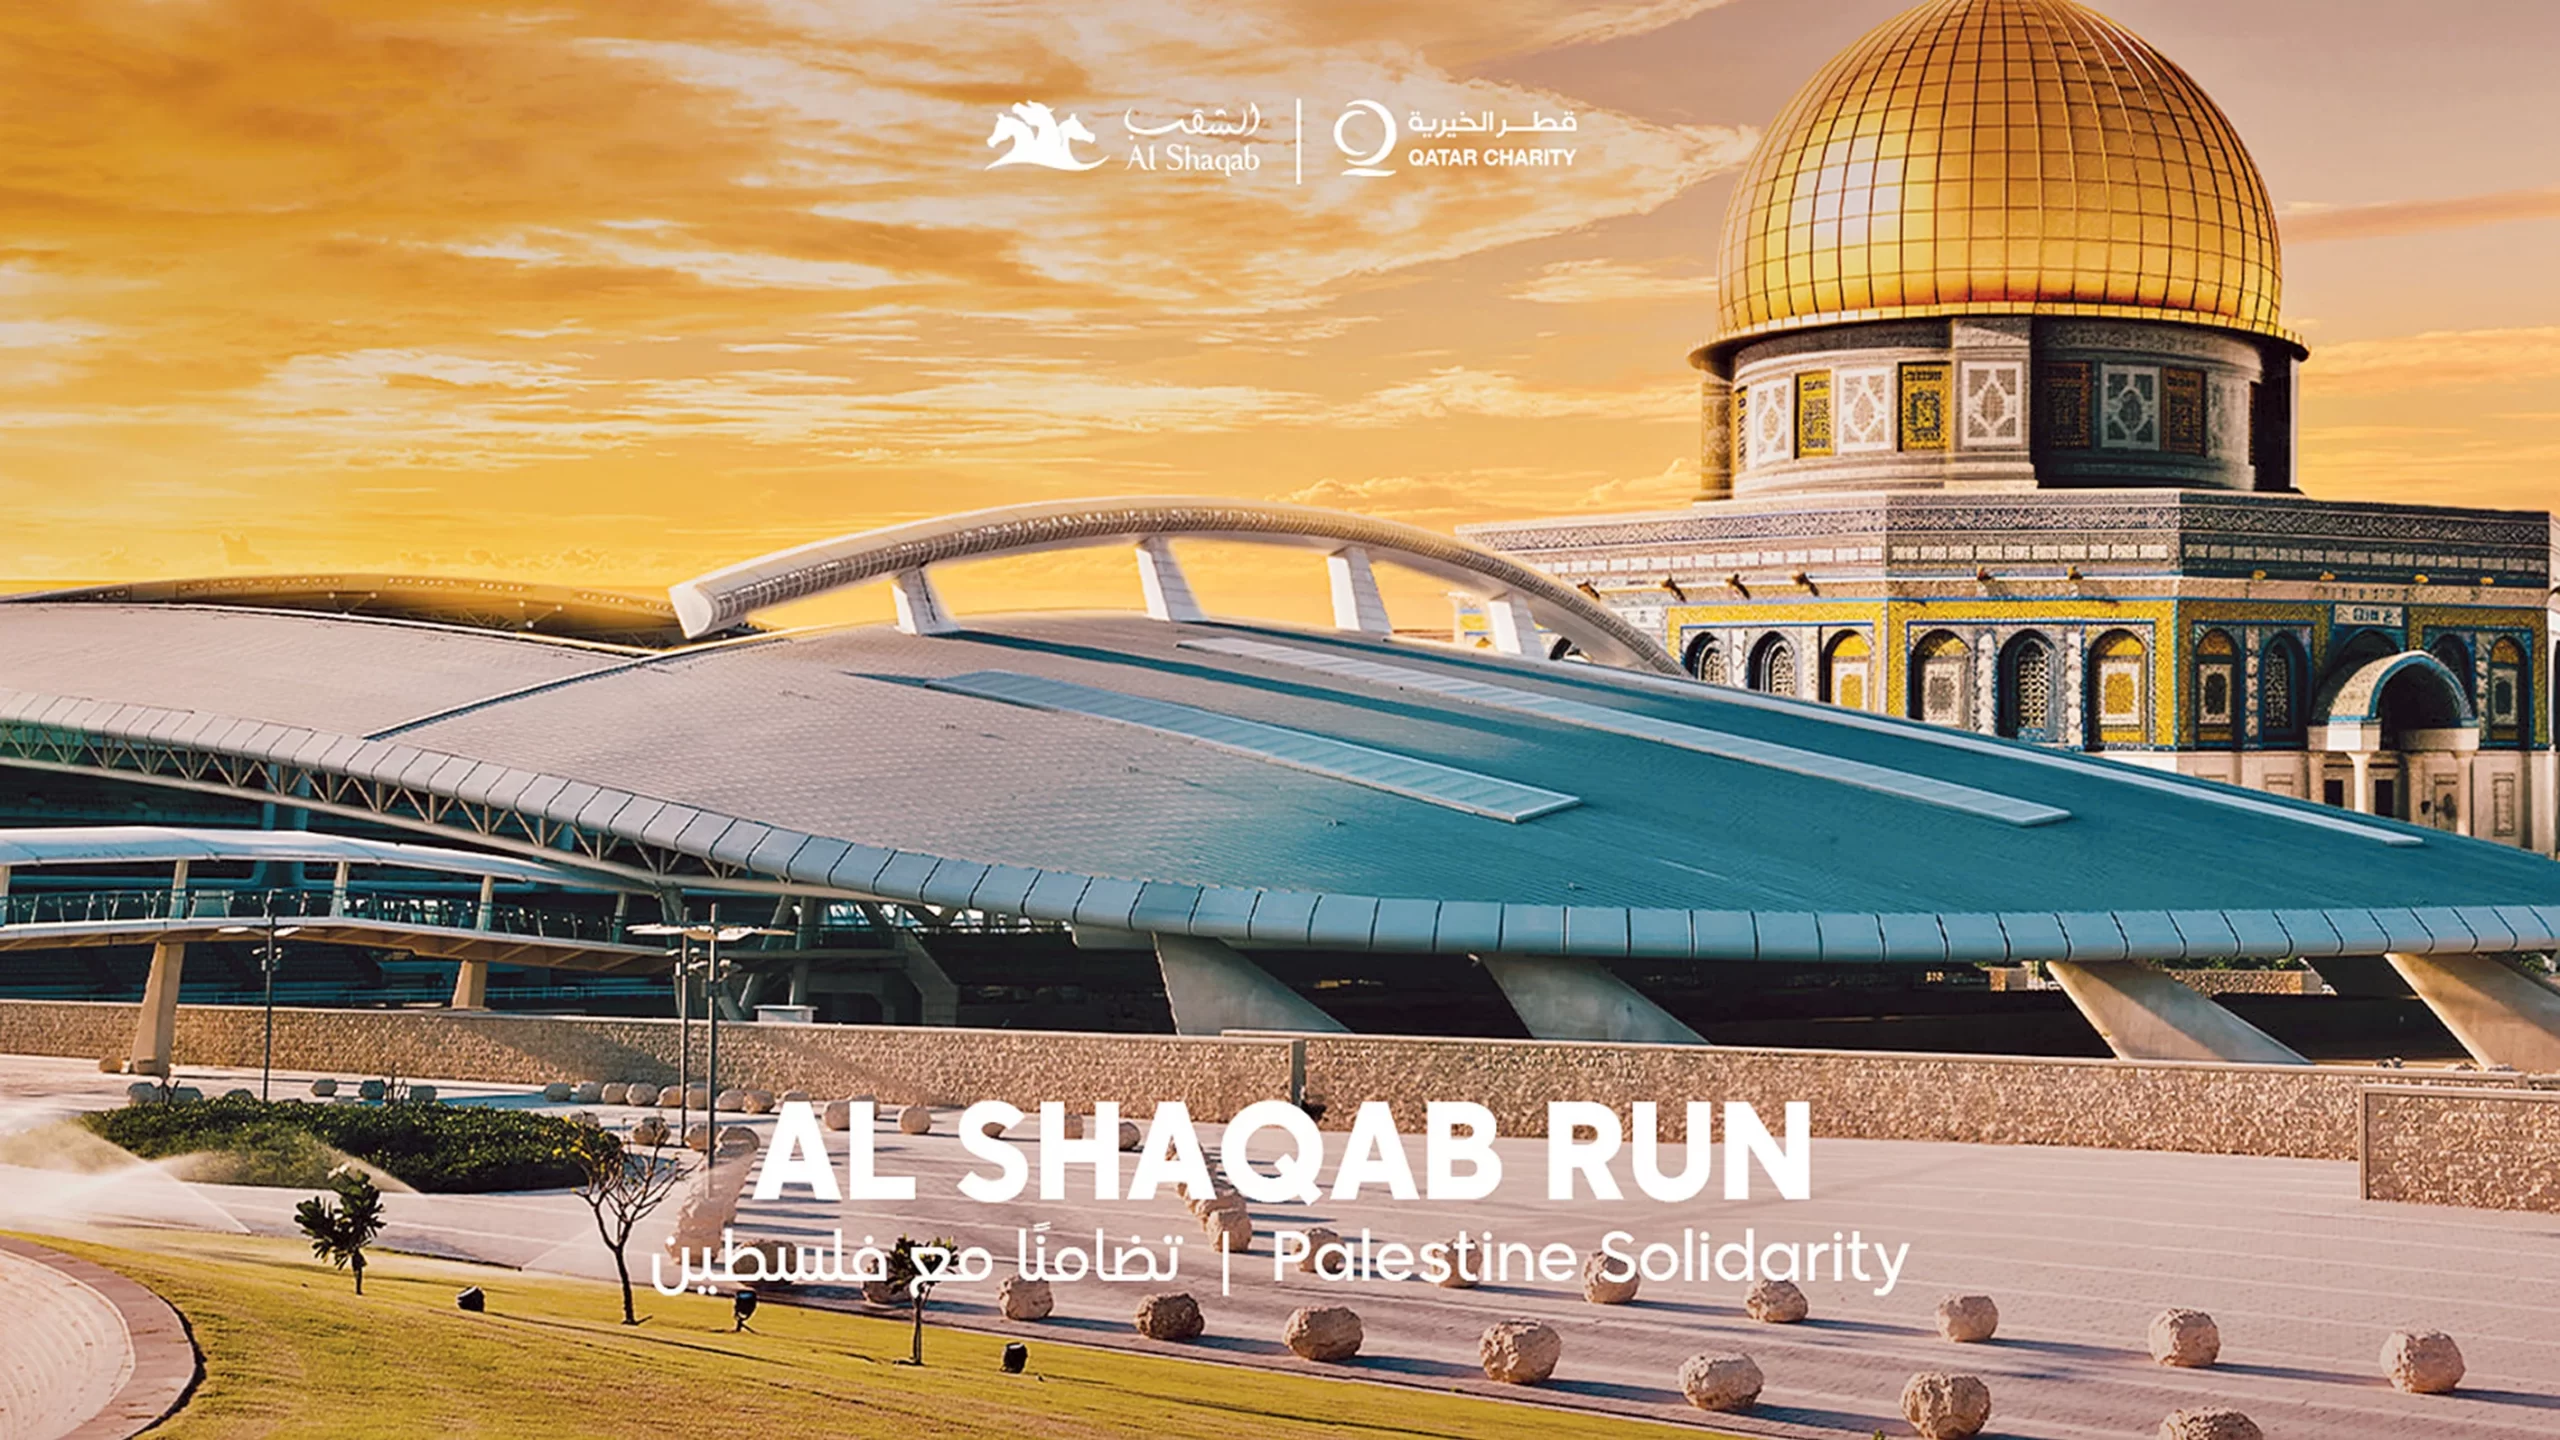 Al Shaqab to Organize "Al Shaqab Run in Solidarity with Palestine" on Nov. 22